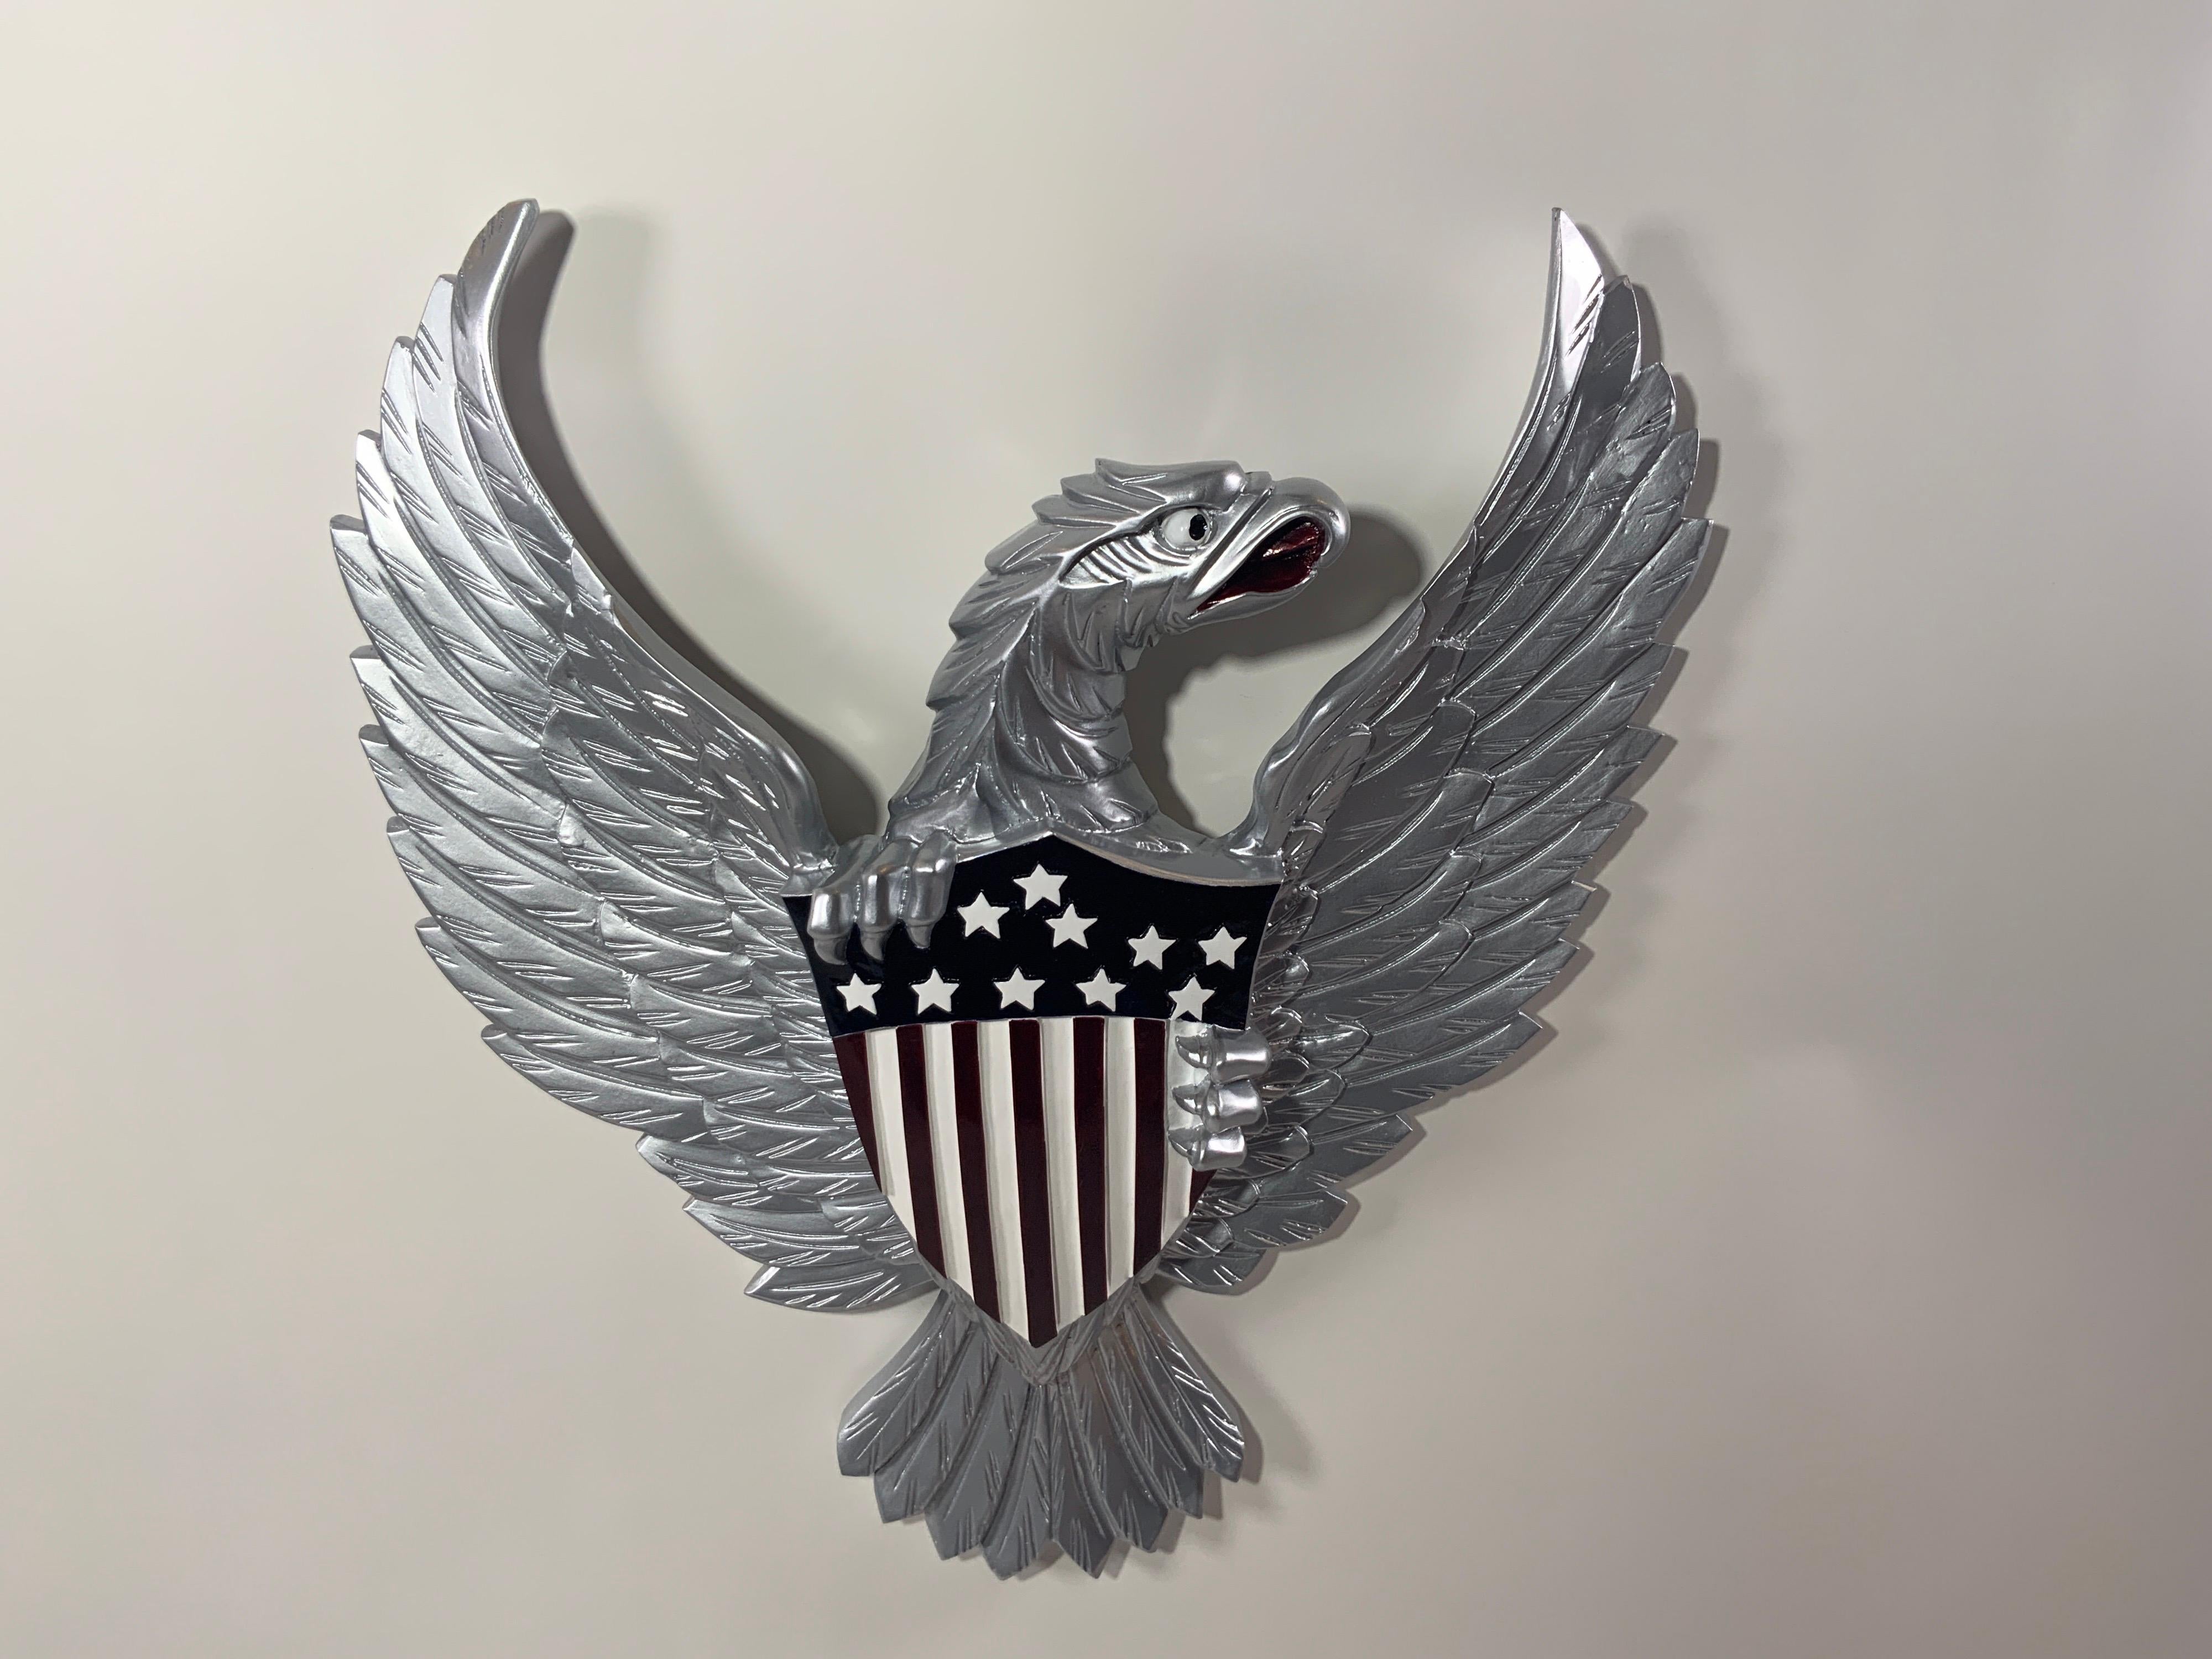 Geschnitzter Holzadler mit glänzend silberner Lackierung. Der Adler ist sehr detailliert und umklammert das Große Siegel in Anlehnung an das US-Wappen. Hinteres Aufhängeseil.

Gesamtabmessungen: 21